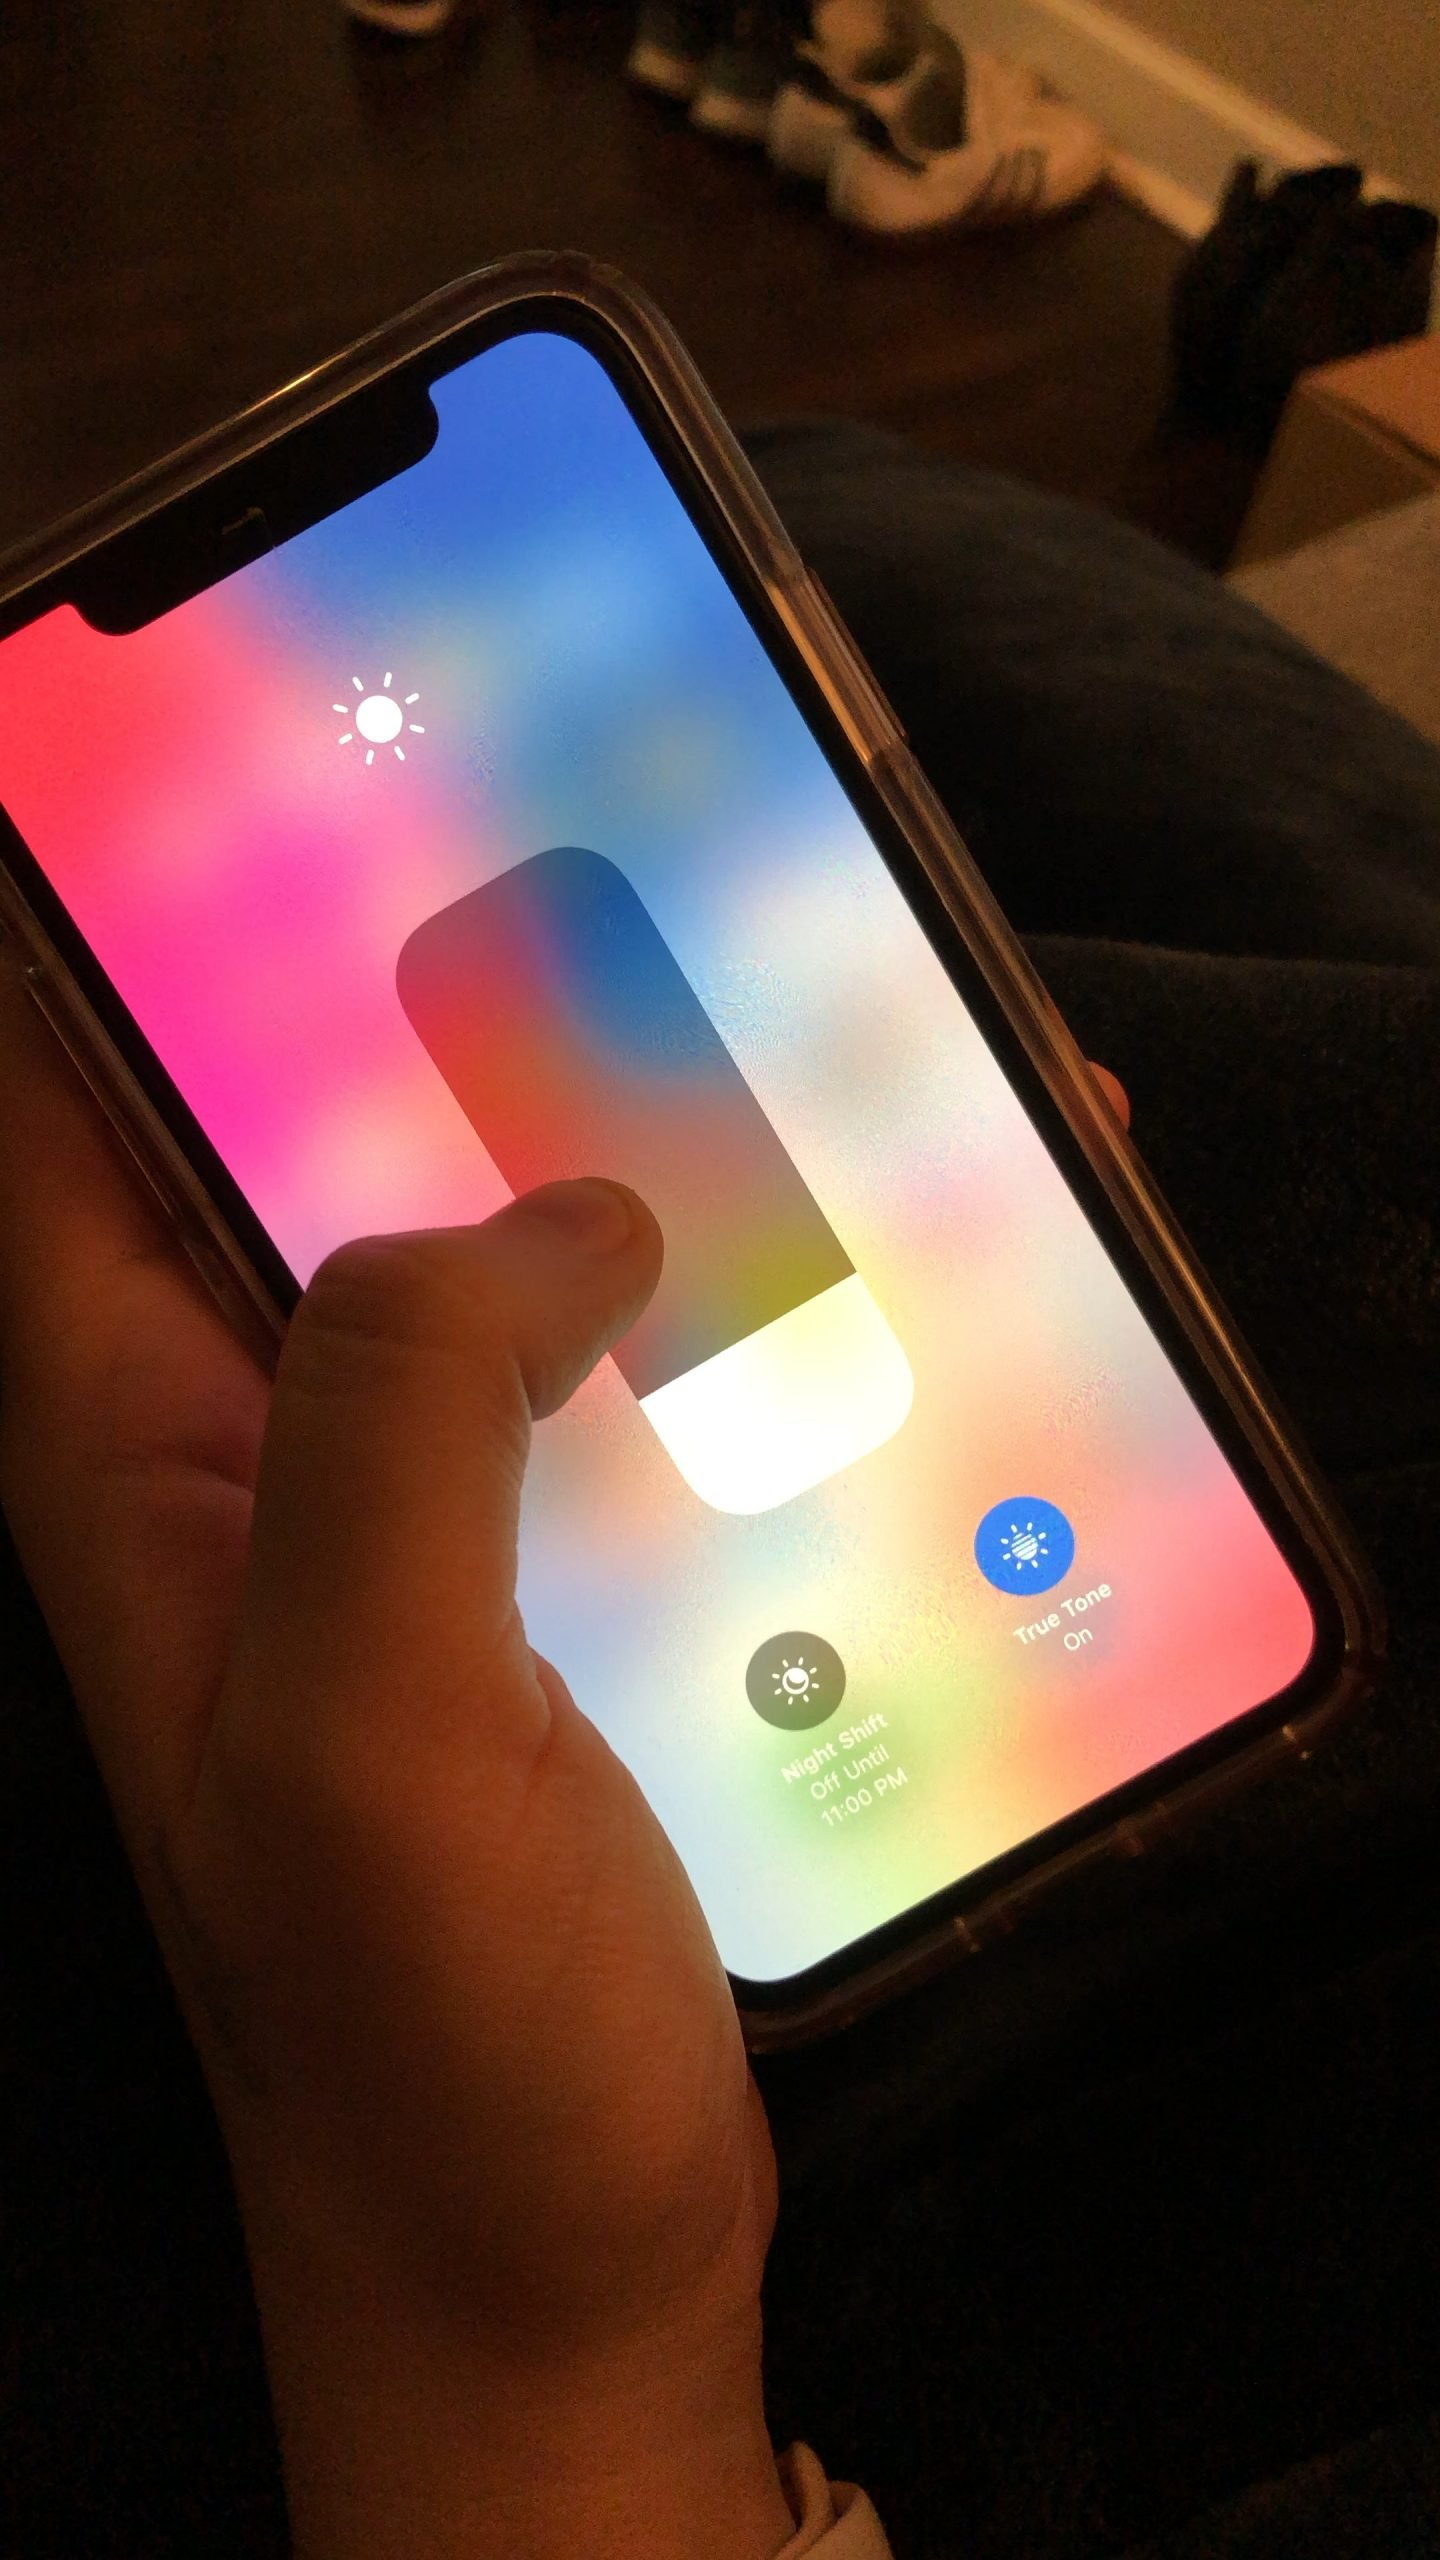 Weird IPhone X Glitch creates a green screen? : iPhoneX